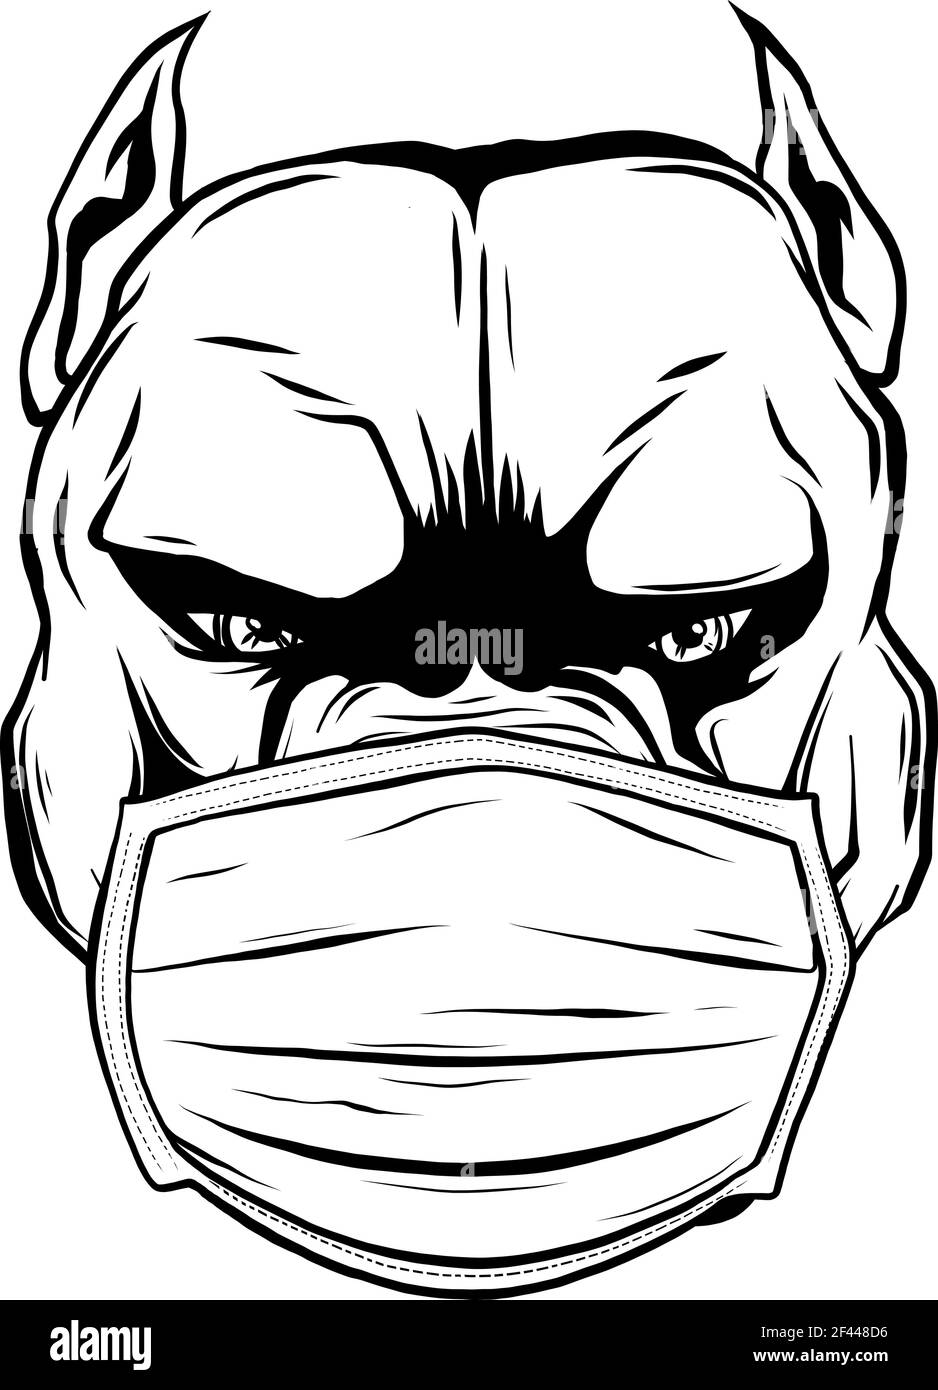 dessinez en noir et blanc de votre chien avec un masque protecteur sur son visage. Illustration de Vecteur